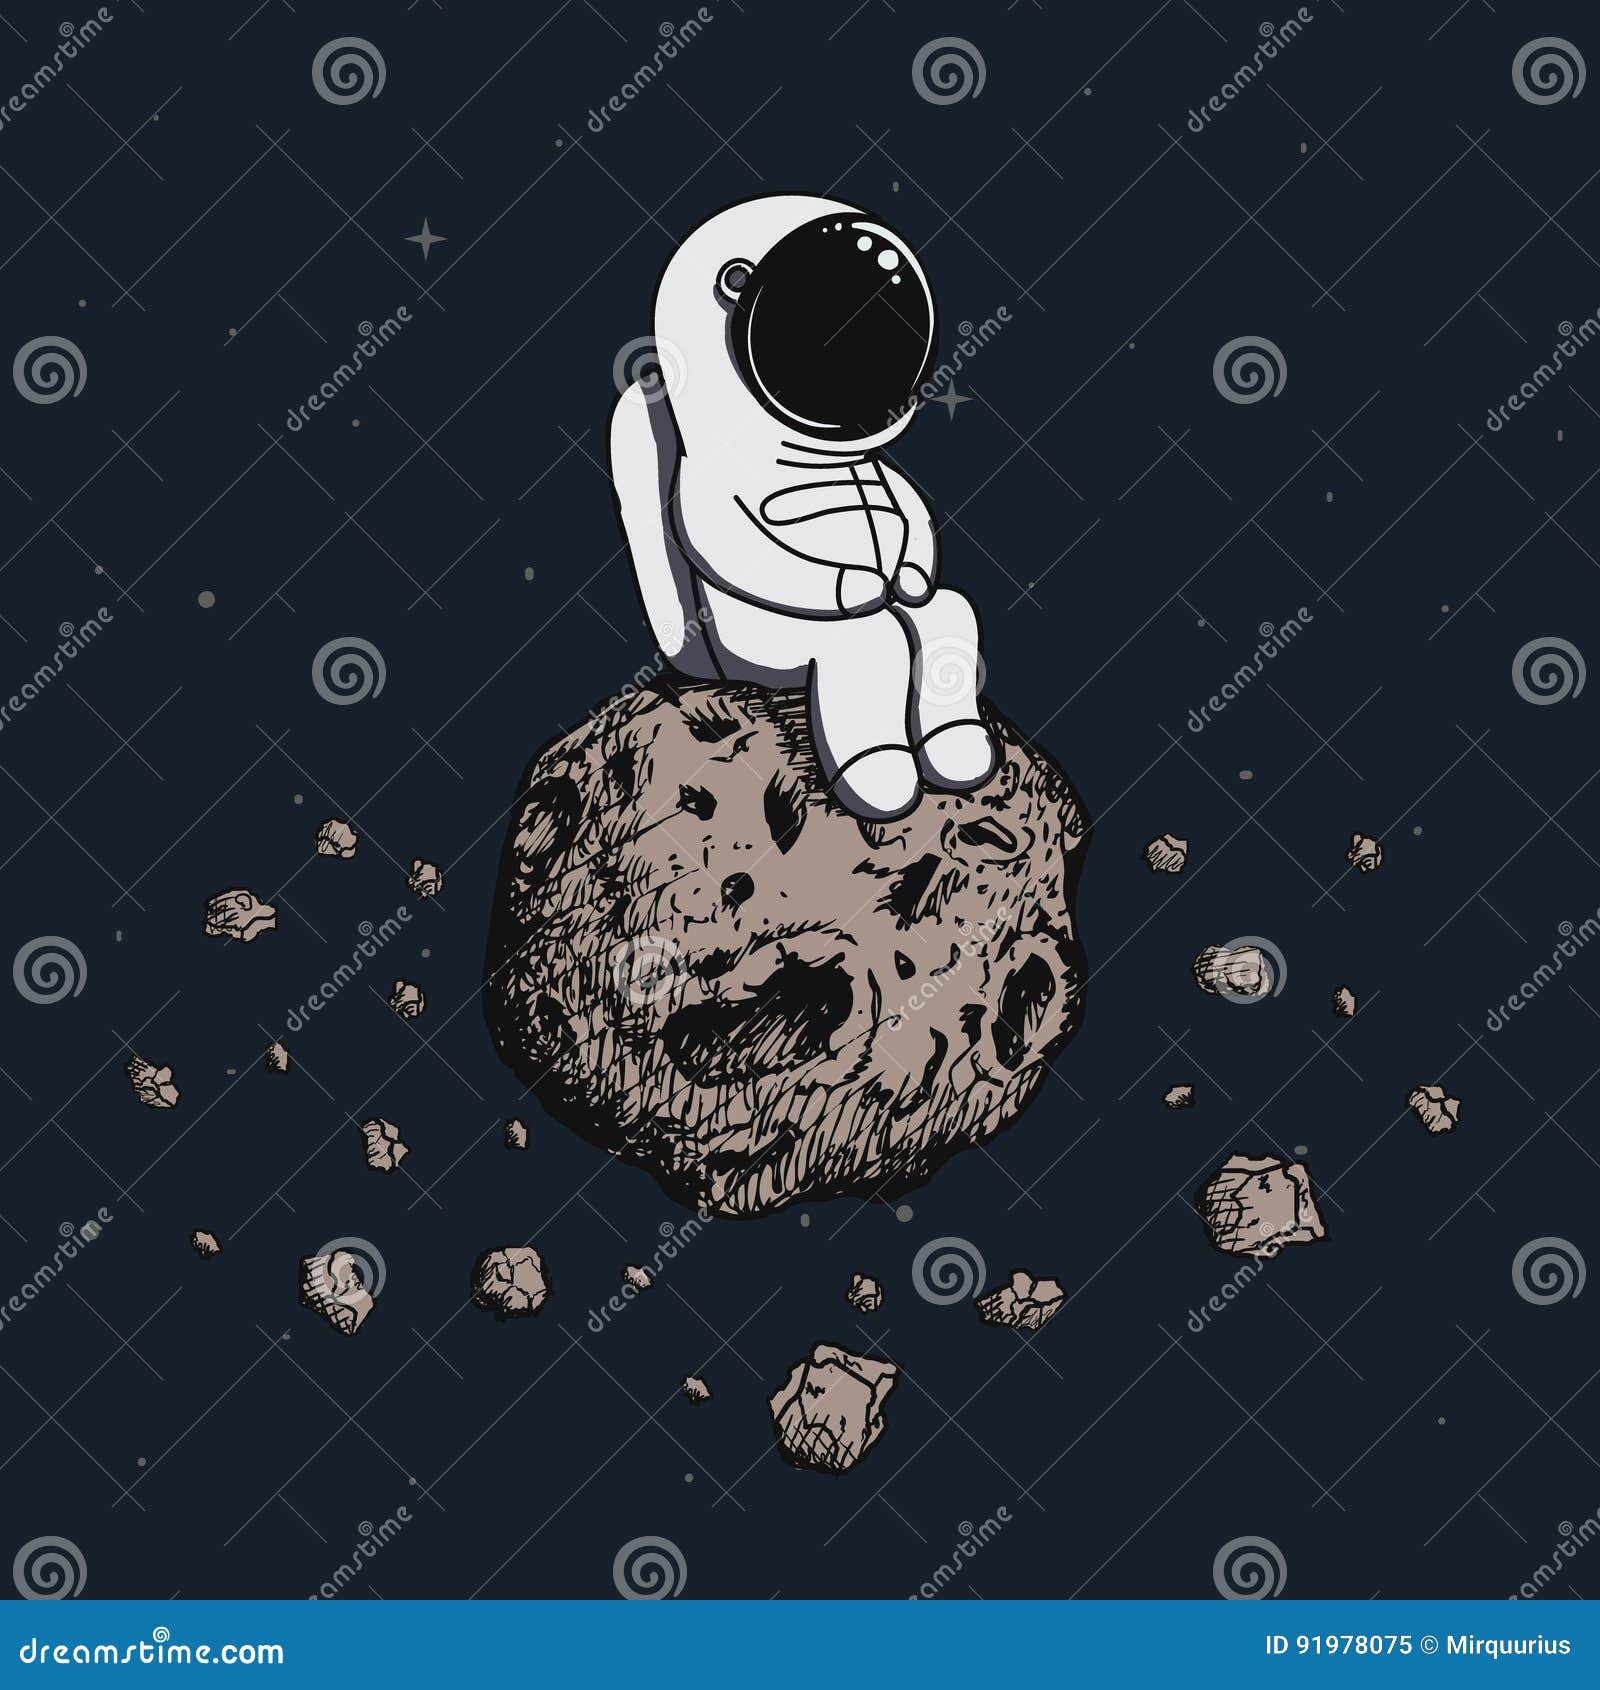 astronaut travel on asteroid